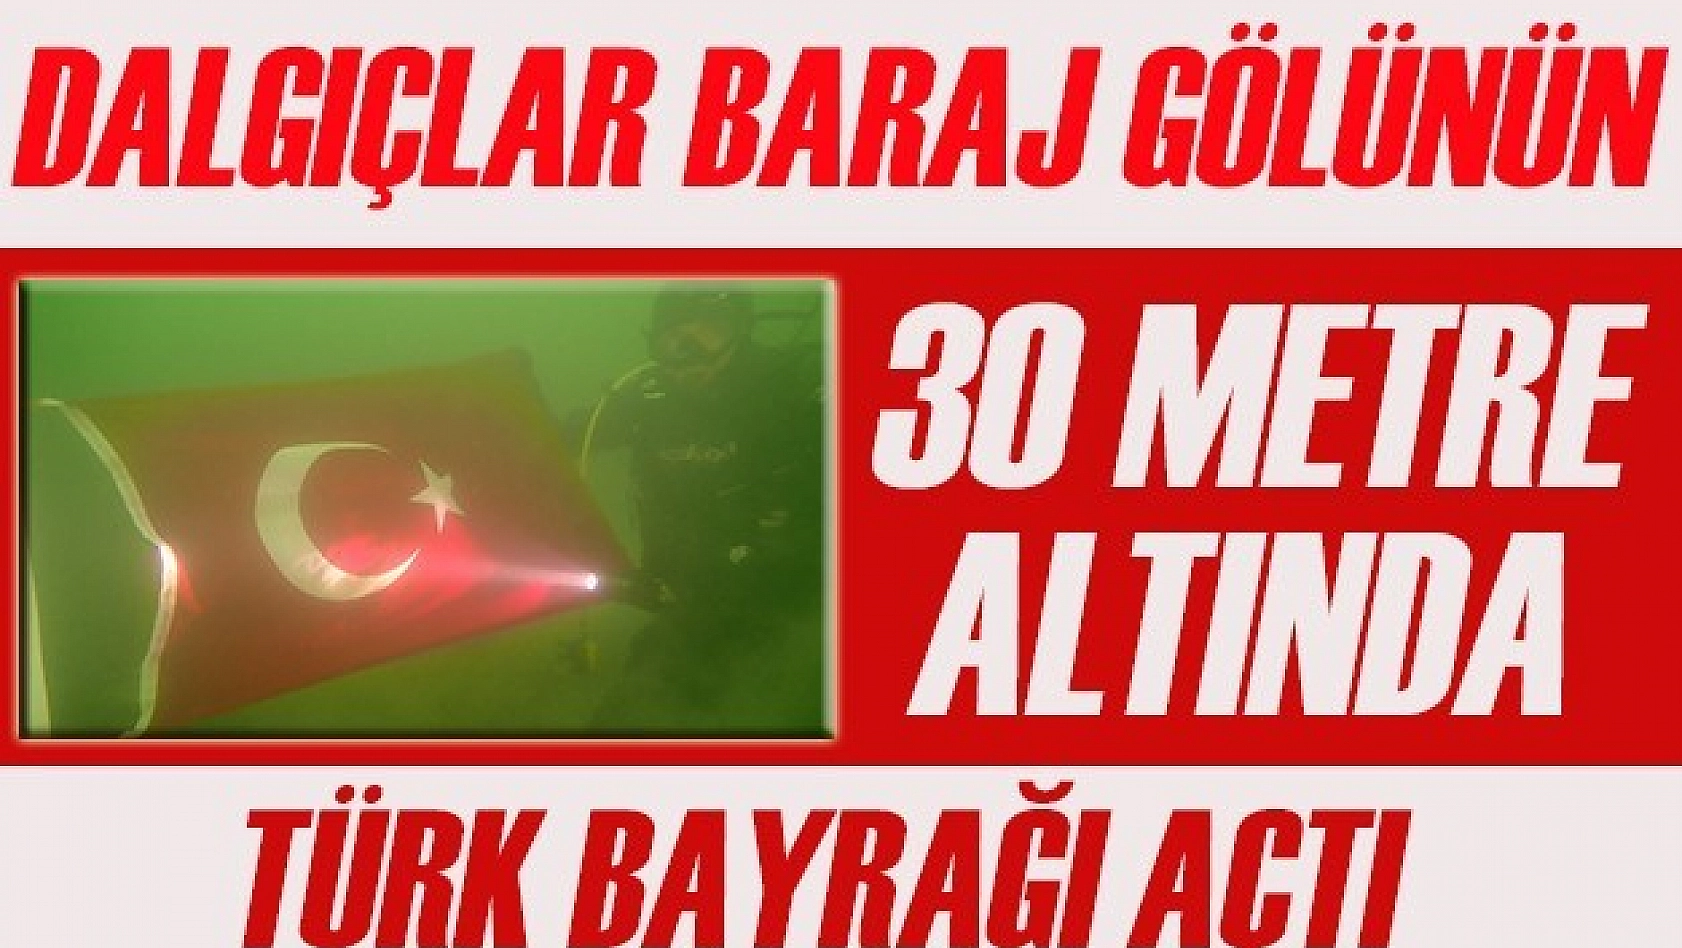 Baraj Gölünün 30 Metre Altında Türk Bayrağı